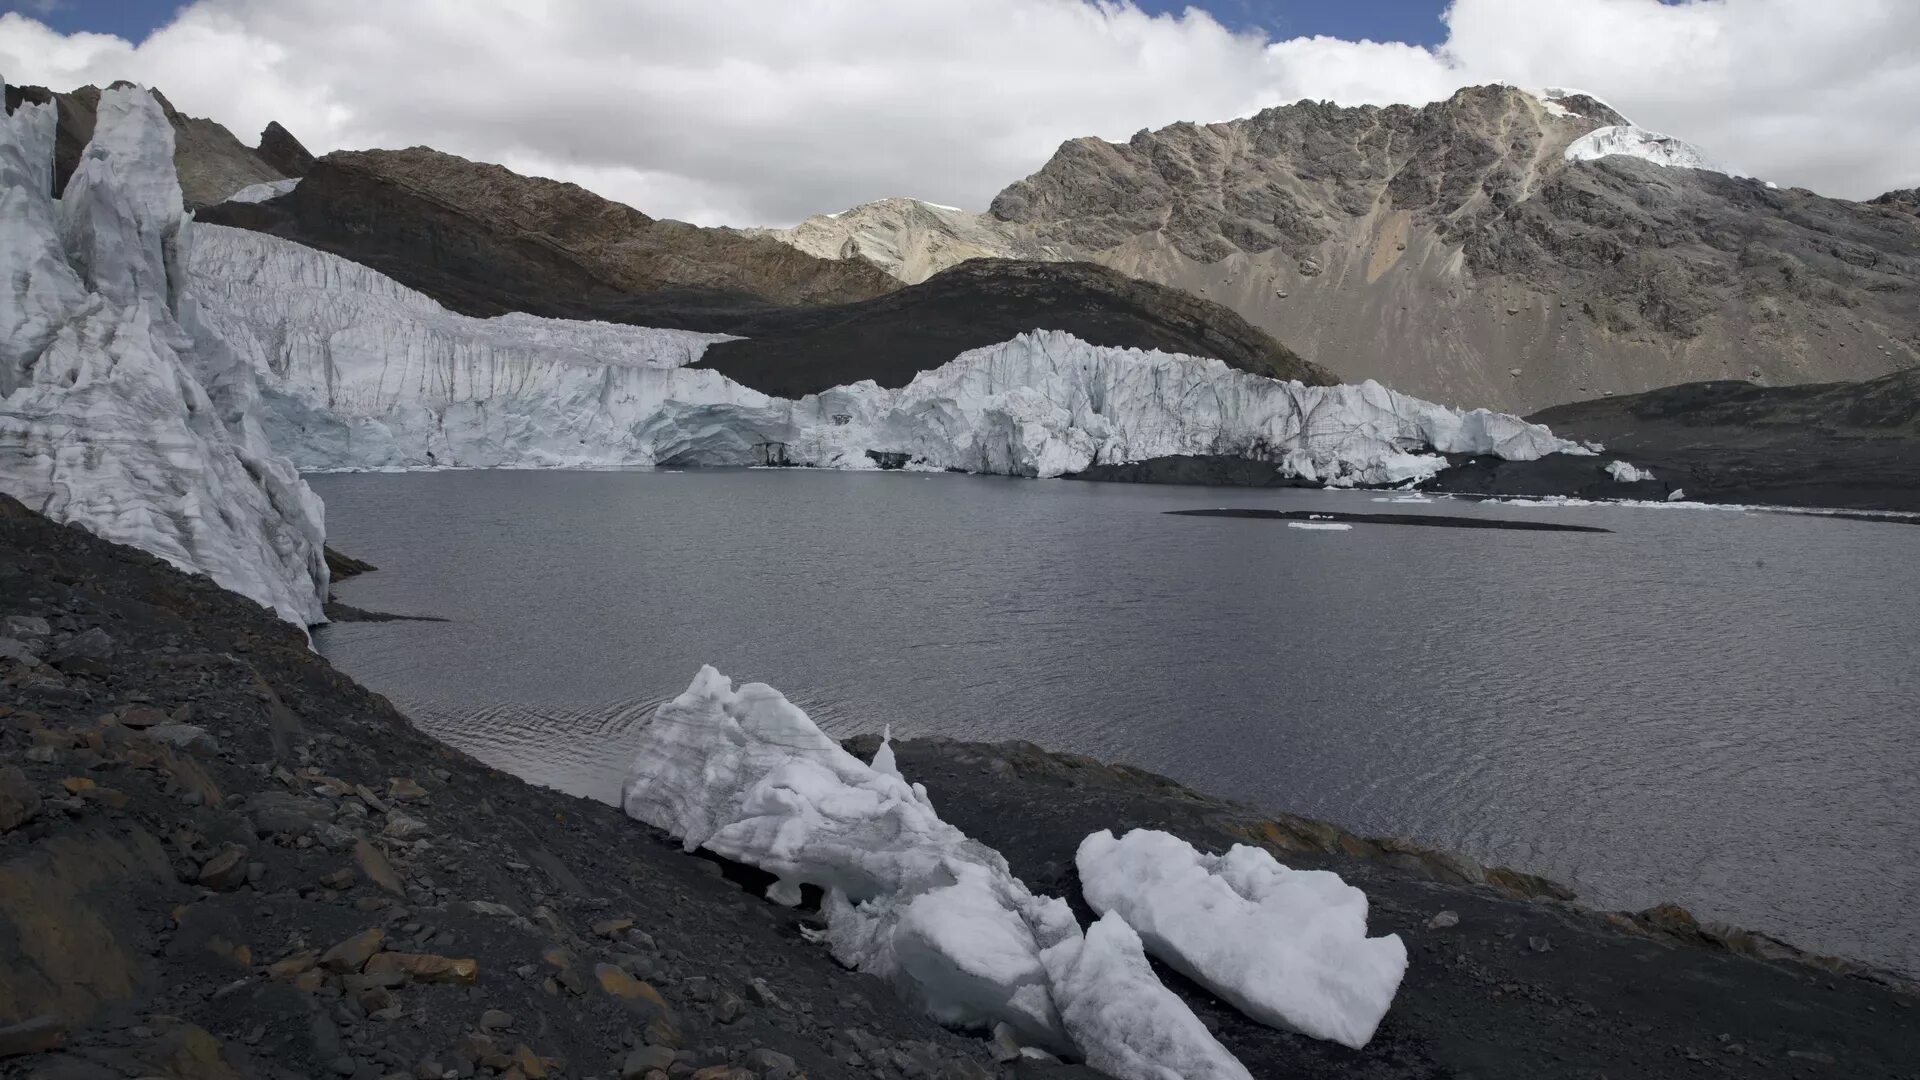 Ледник академии наук. Ледник Пасторури. Ледник в Перу. Исчезновение ледников. Таяние ледников в Андах.